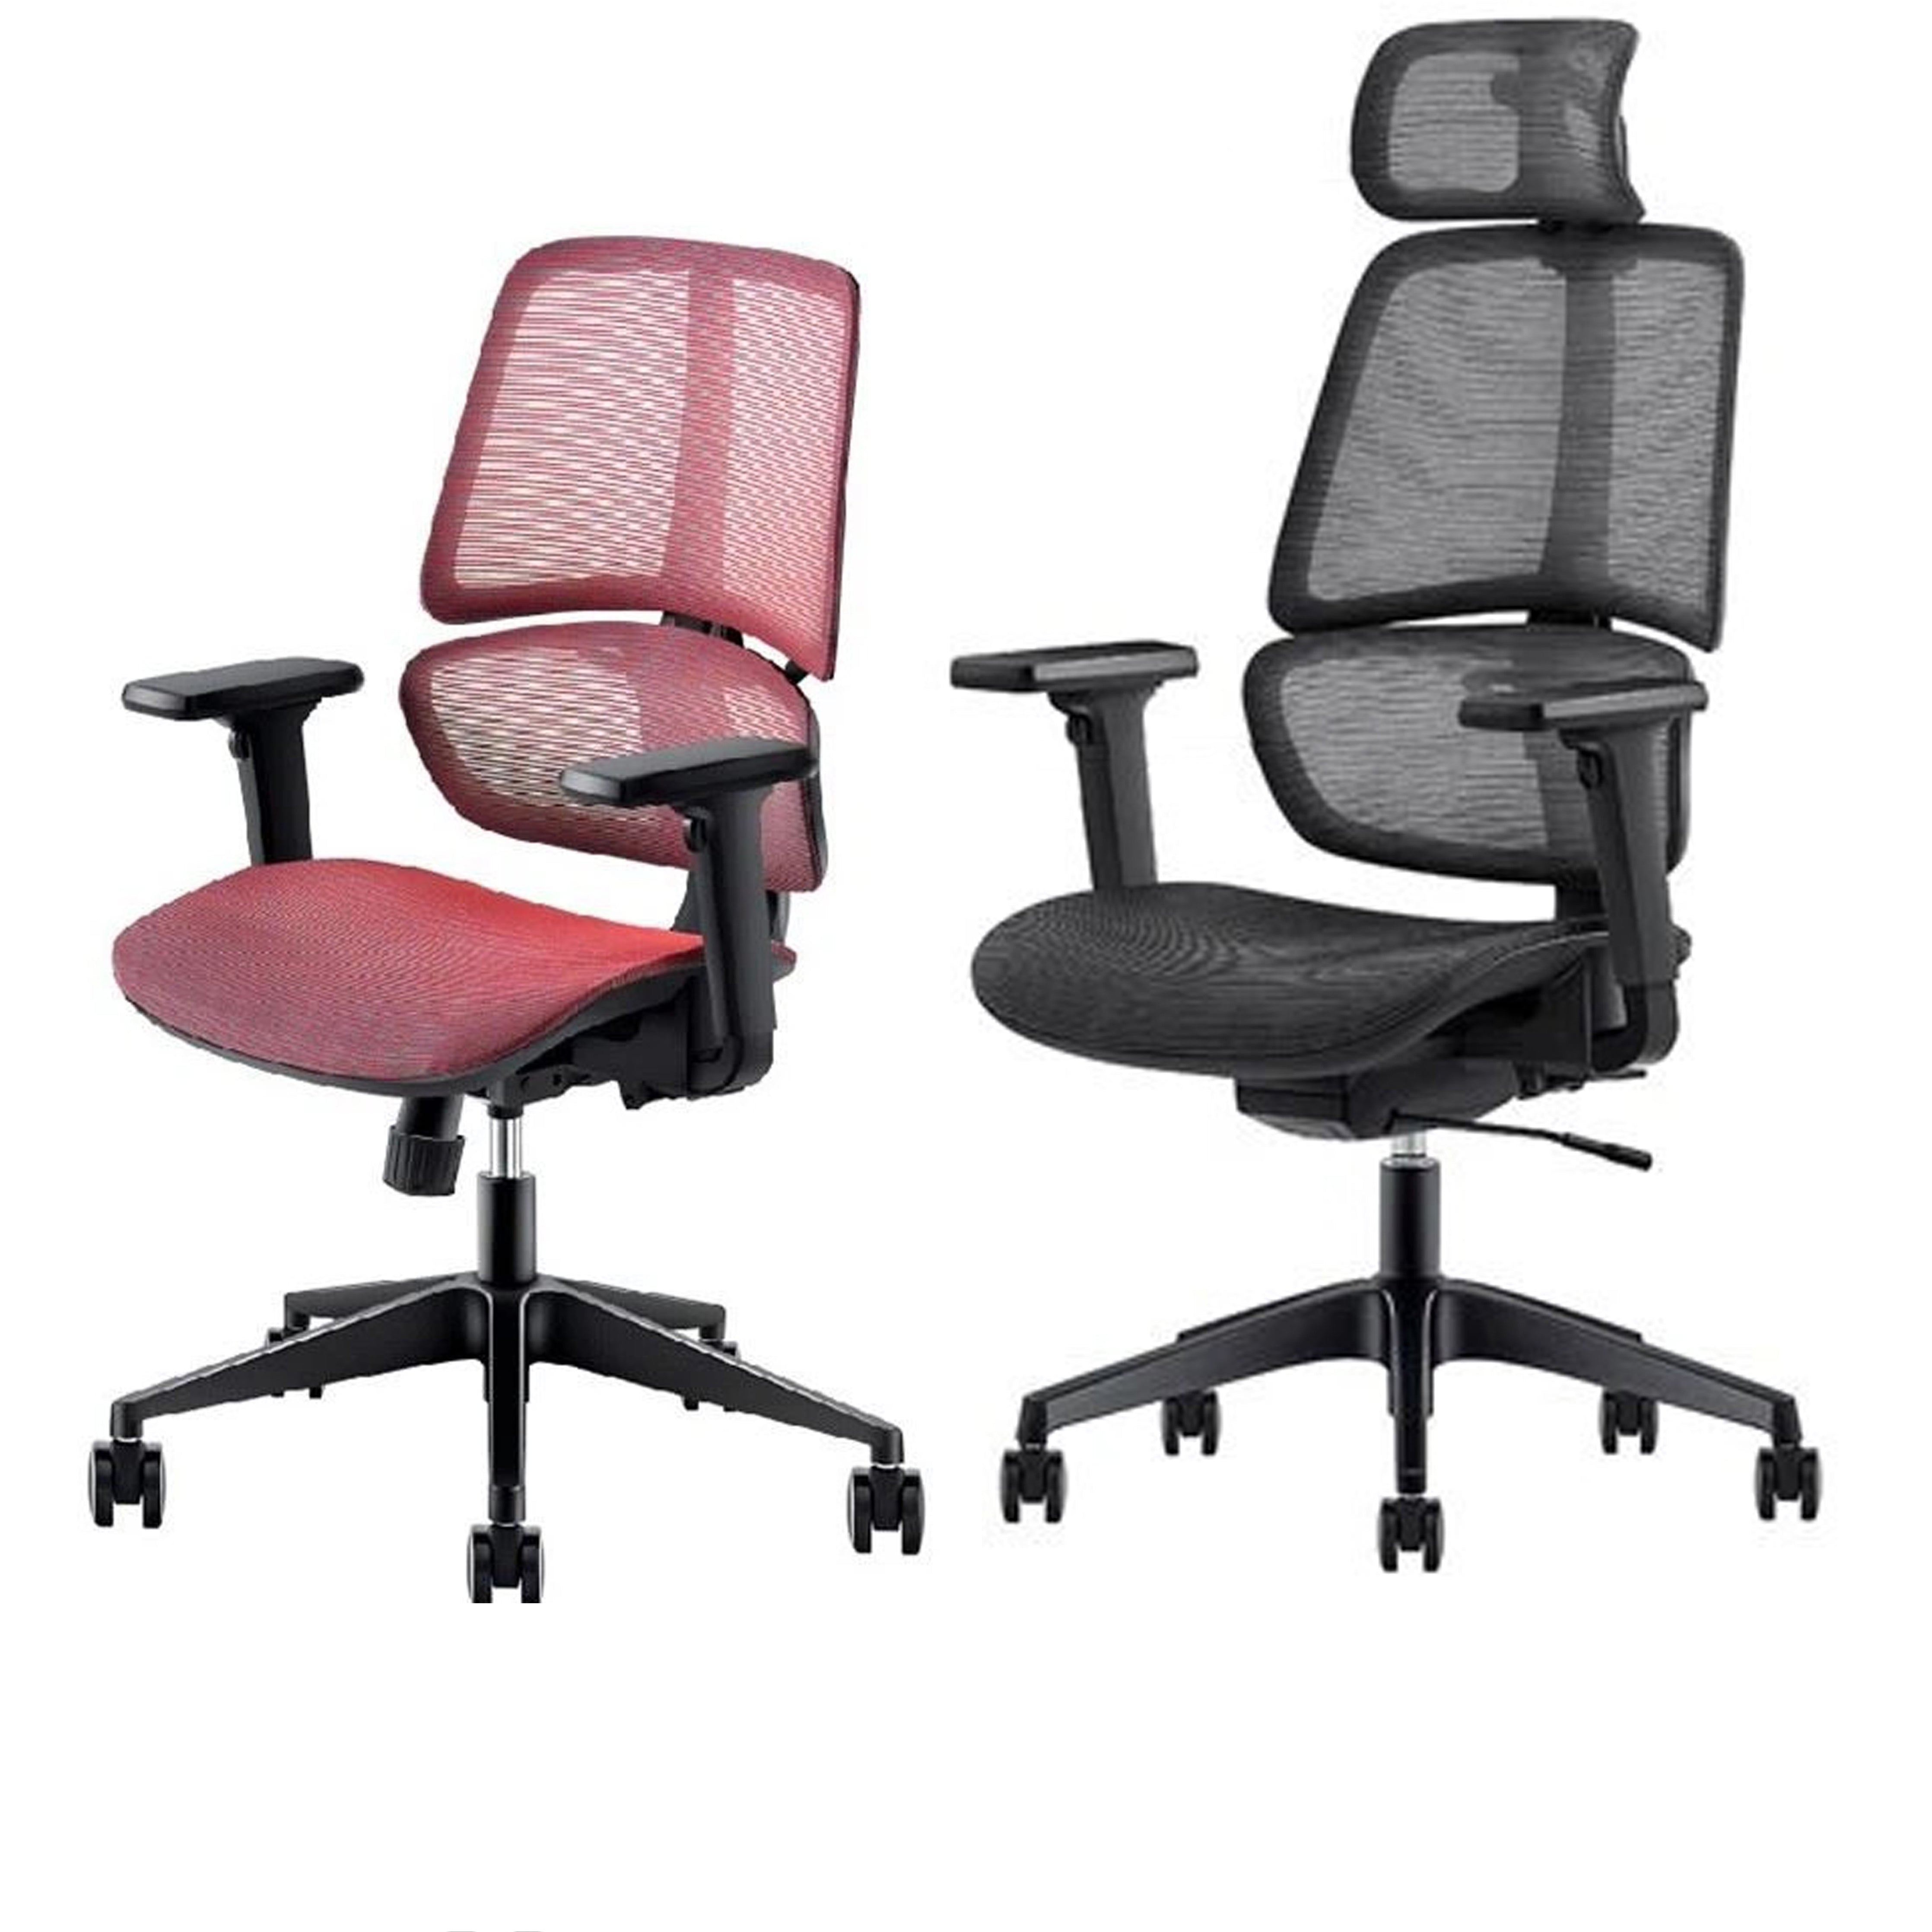 Teegar - Office Chair